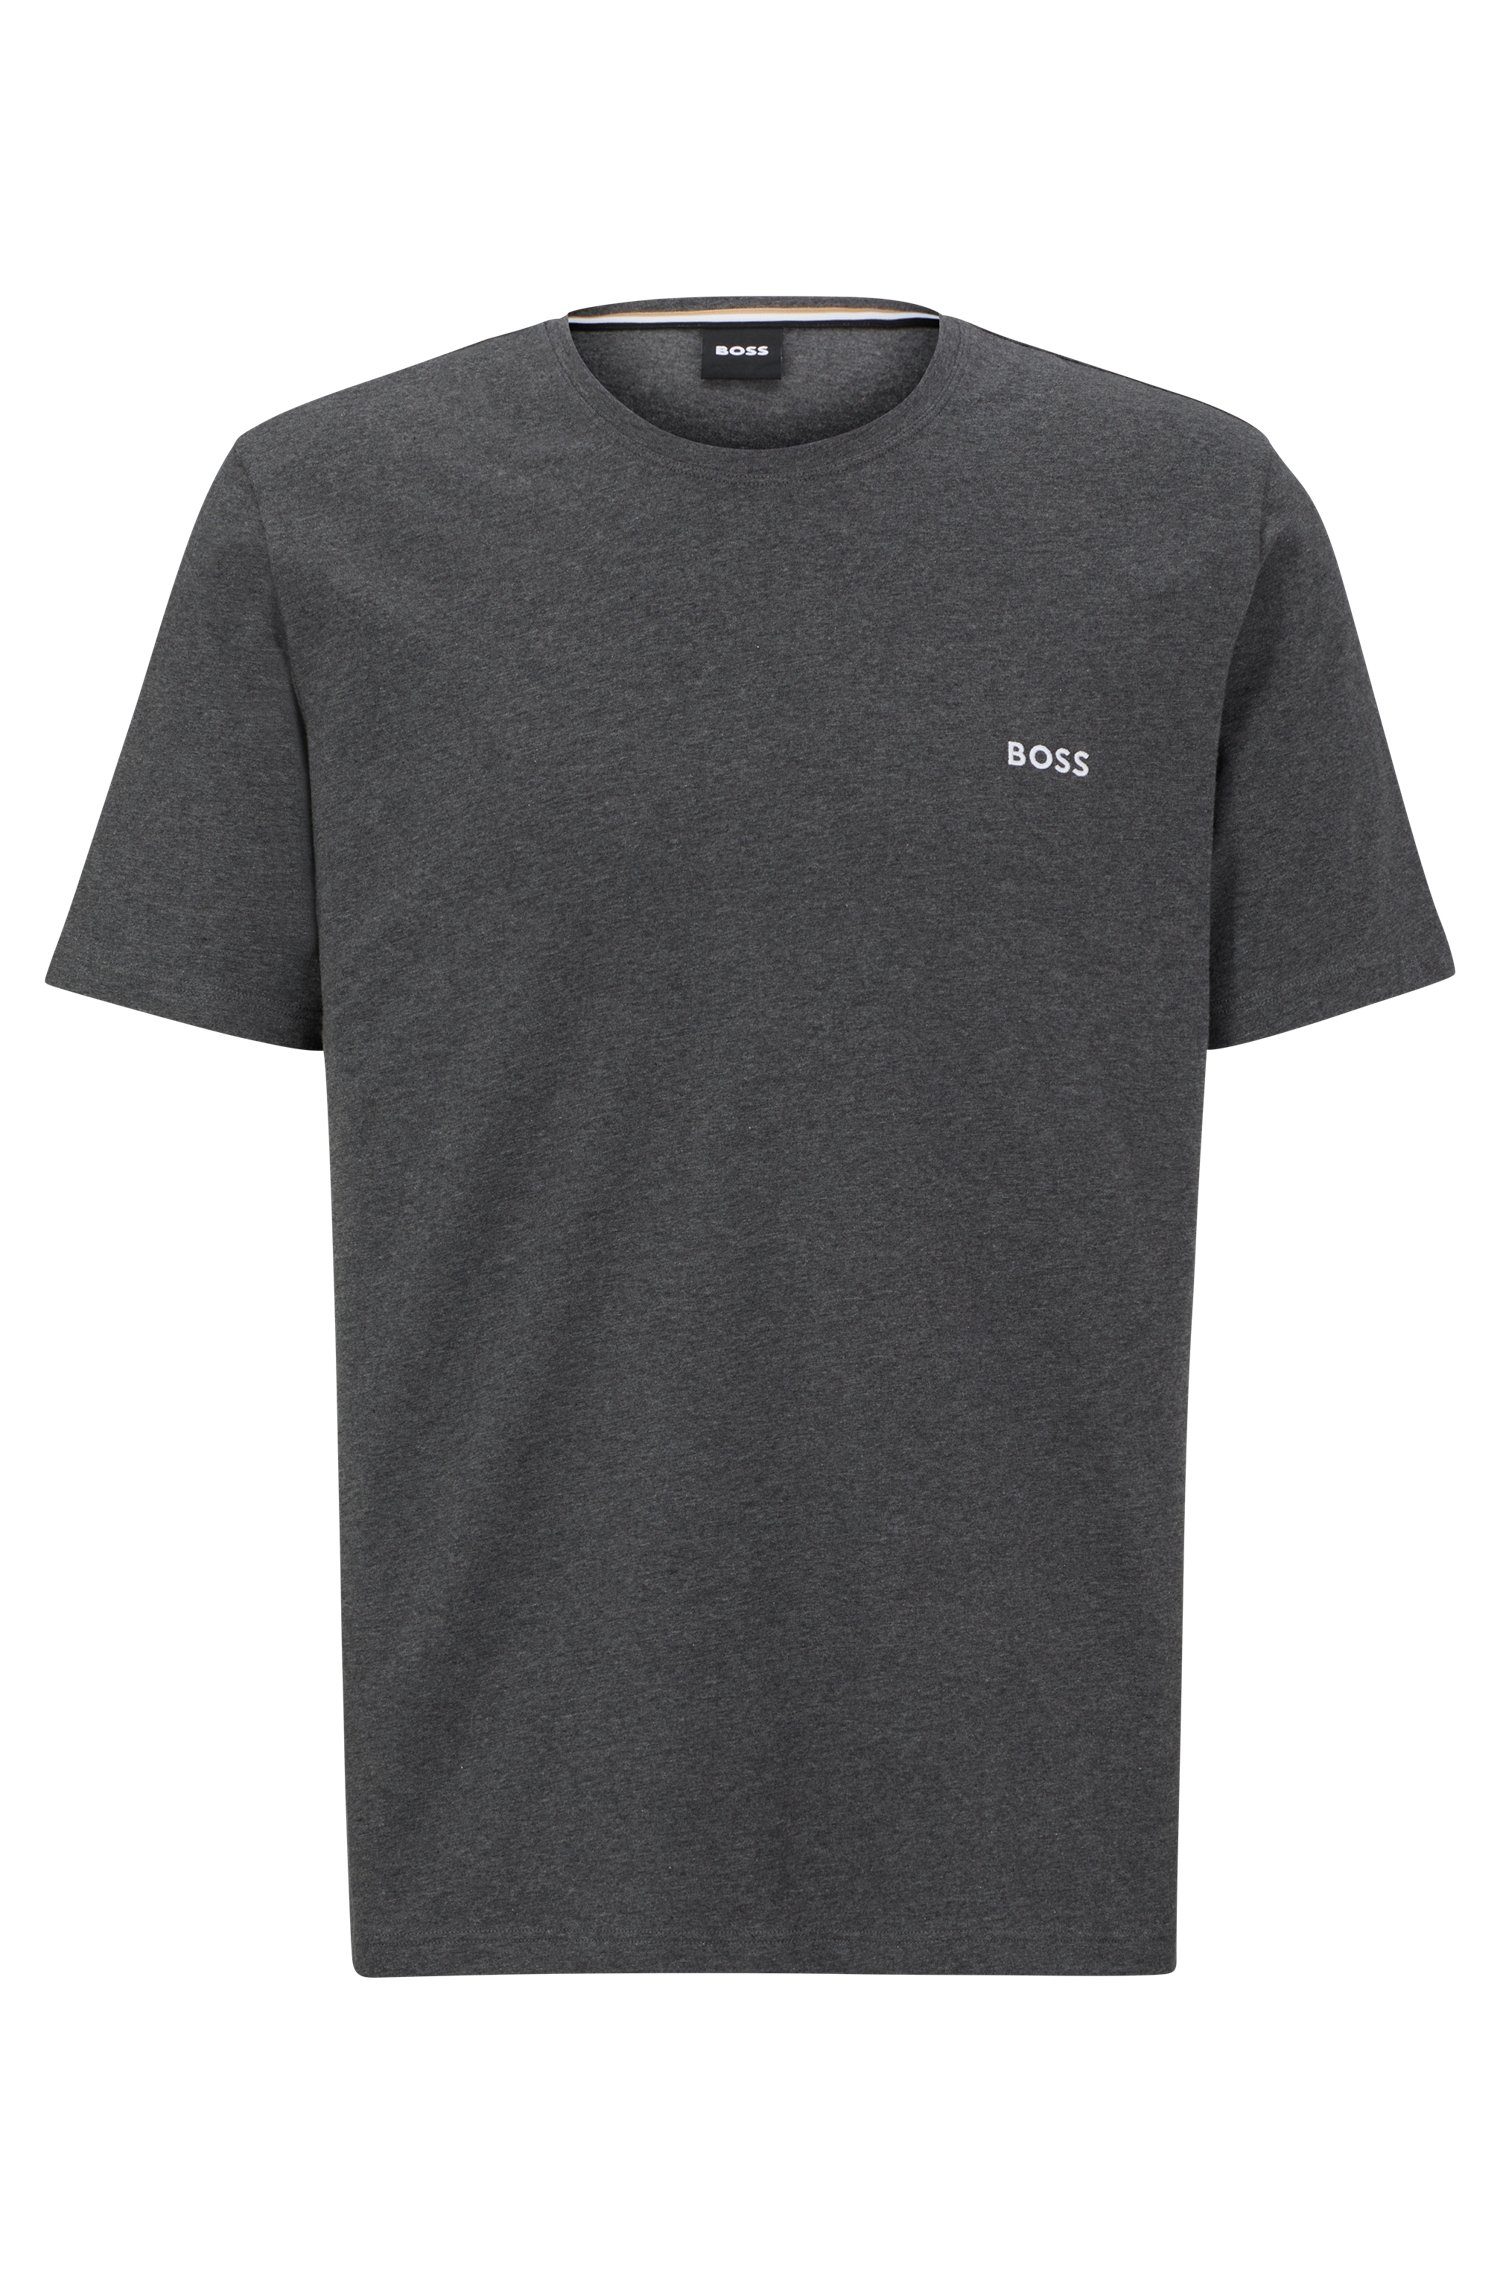 BOSS Mix&Match T-Shirt der BOSS auf T-Shirt Mit Stickerei Charcoal R Brust